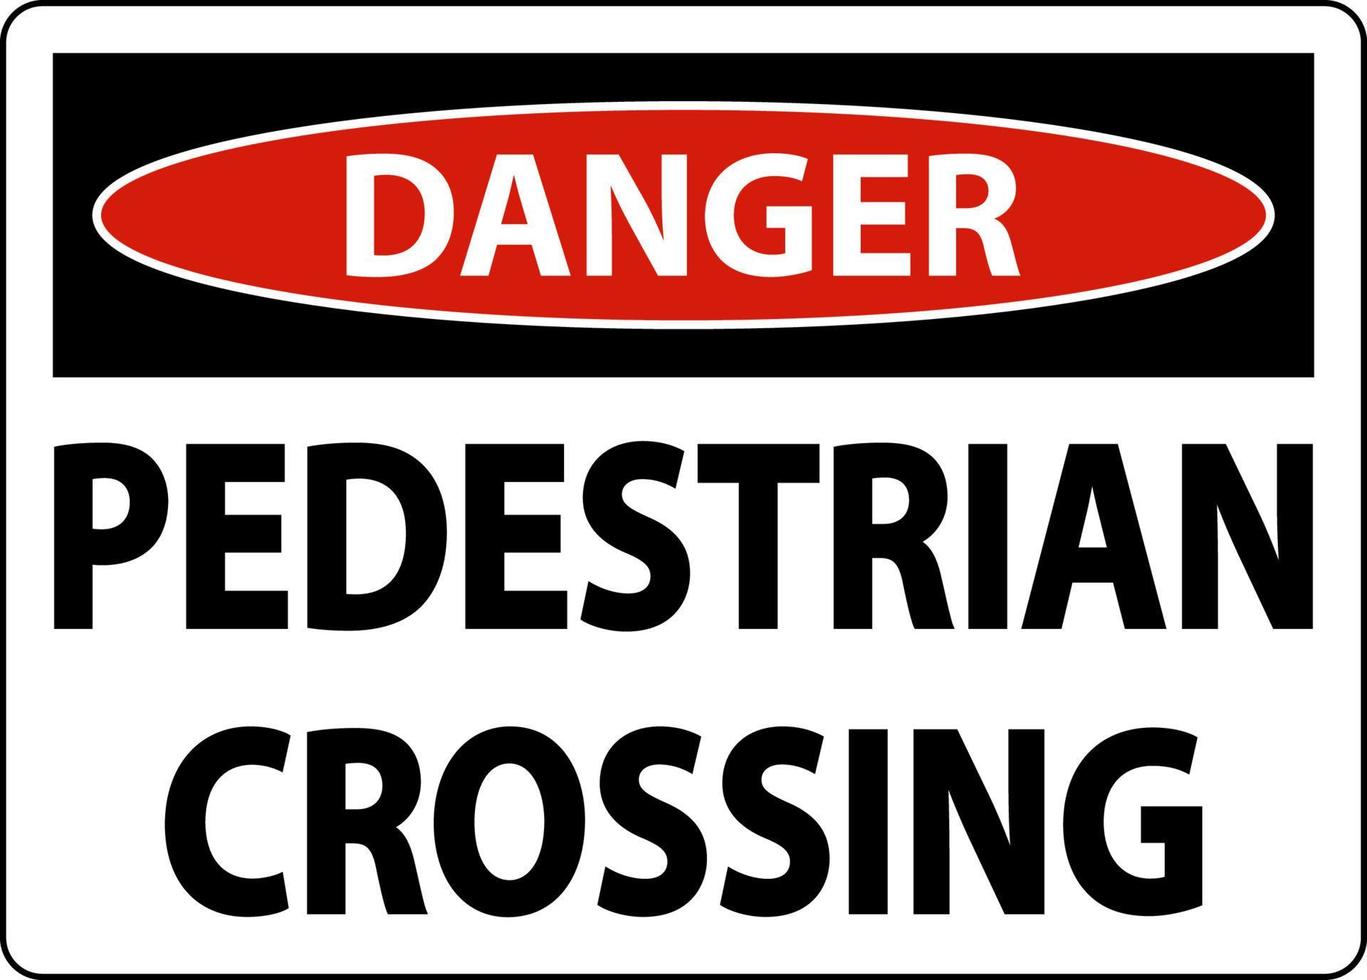 señal de cruce de peatones de peligro sobre fondo blanco vector